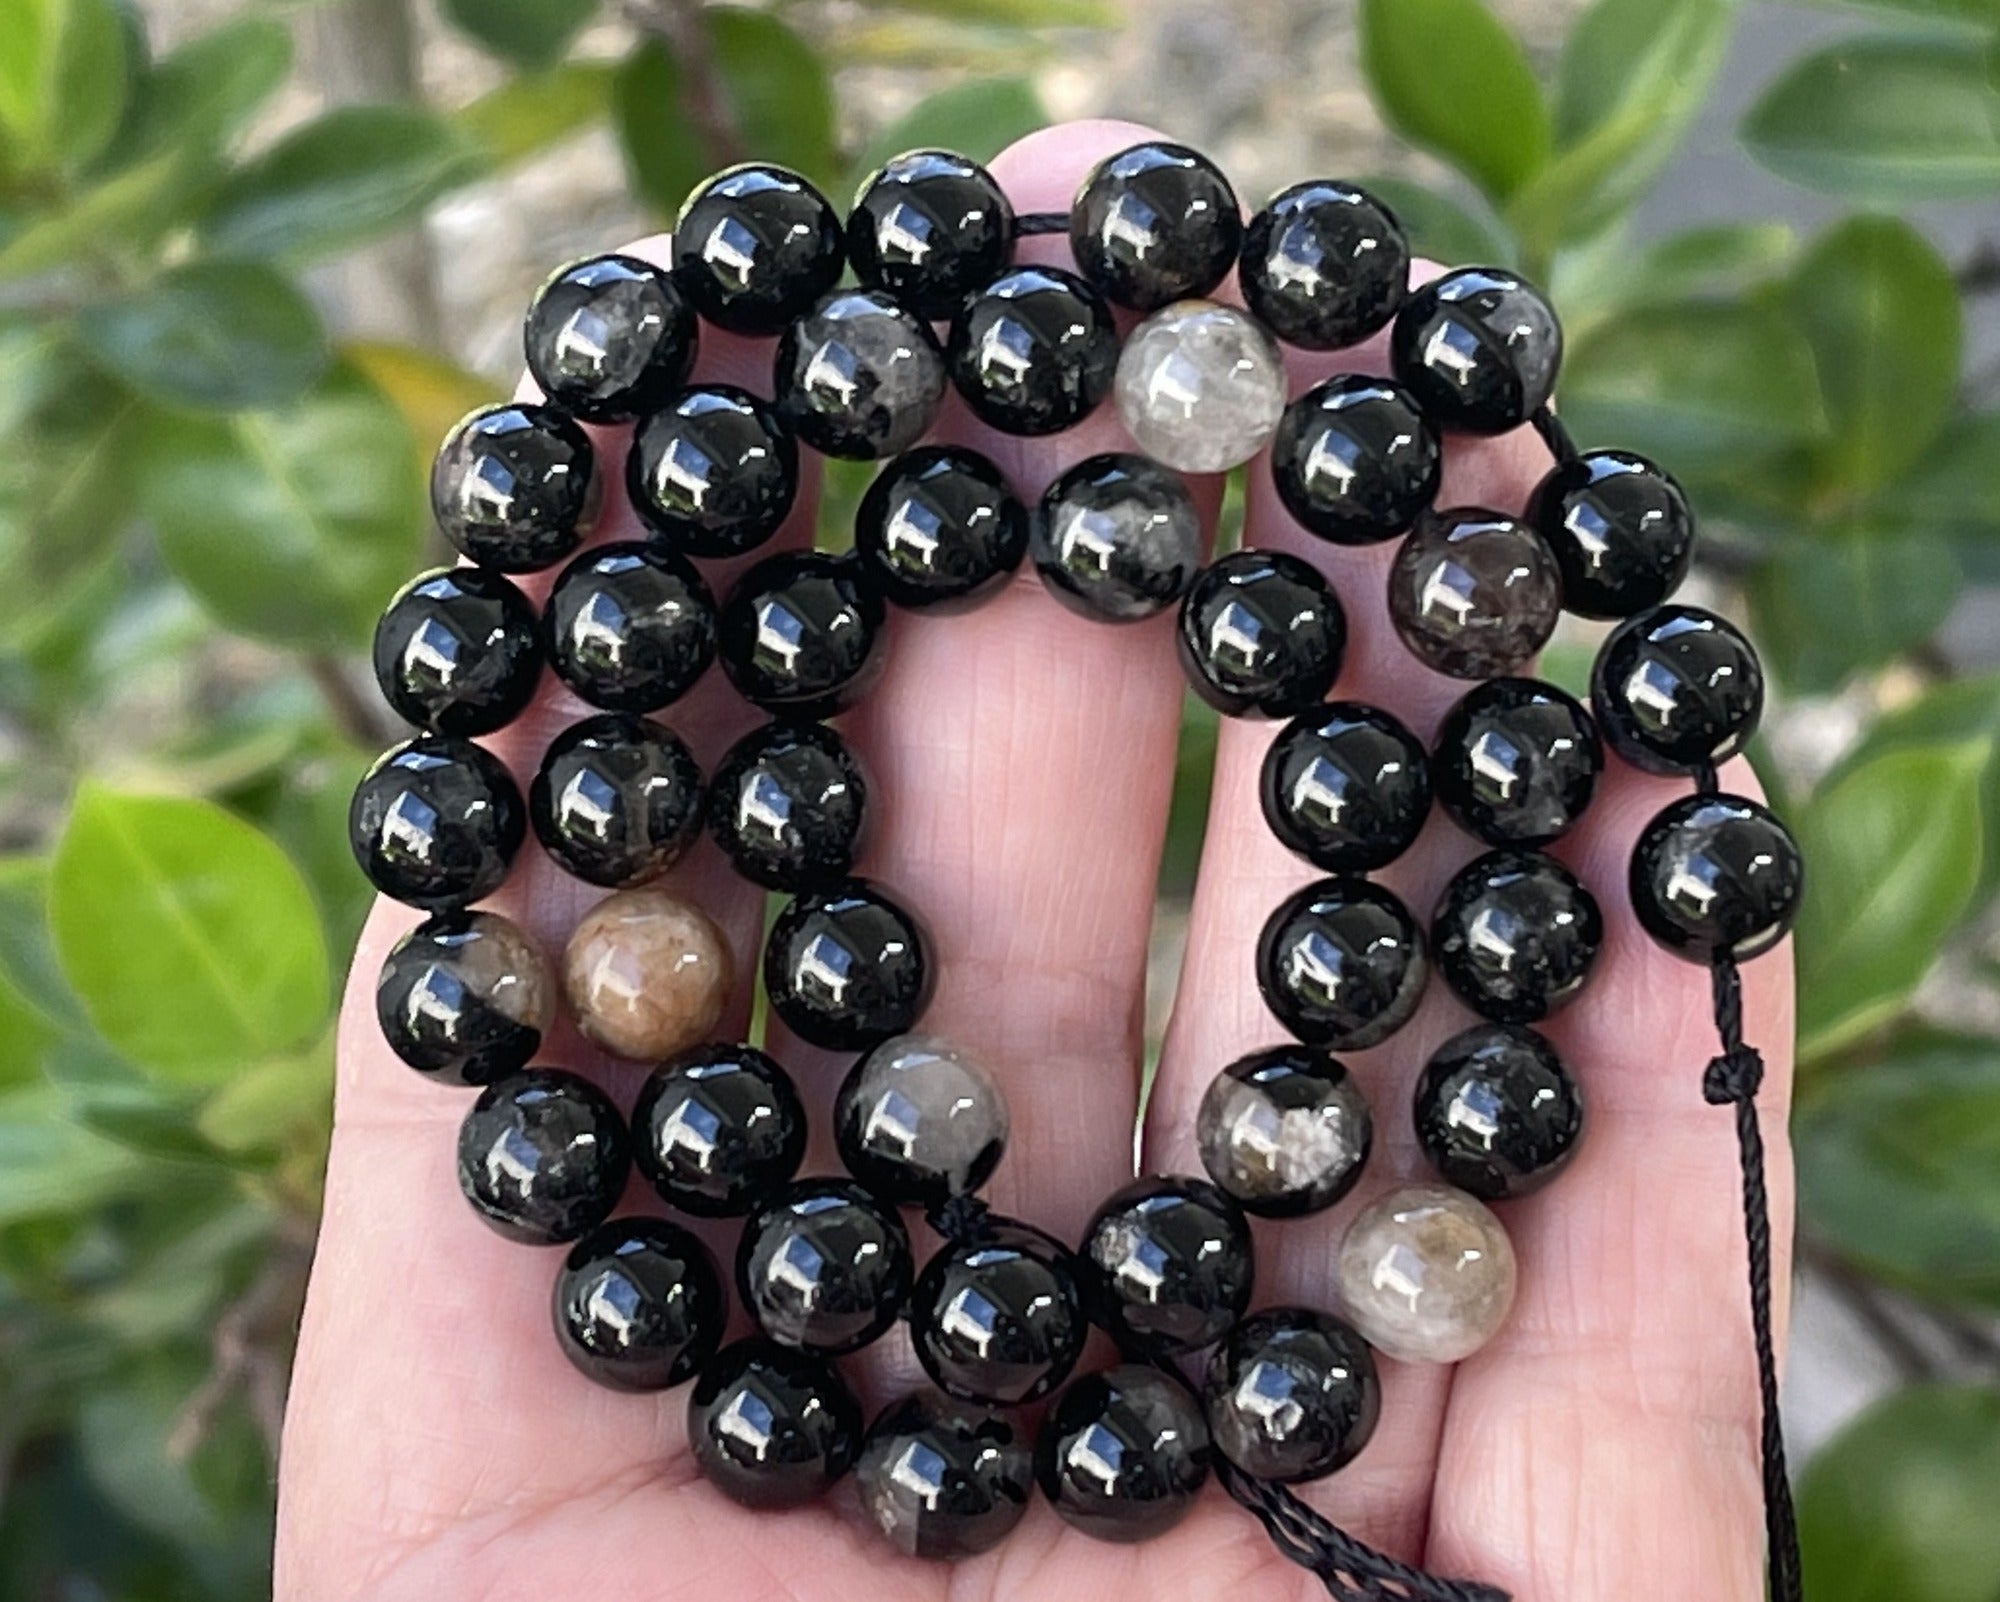 Black Tourmaline in Quartz and Iron Matrix 8mm round natural gemstone beads 15.5" strand